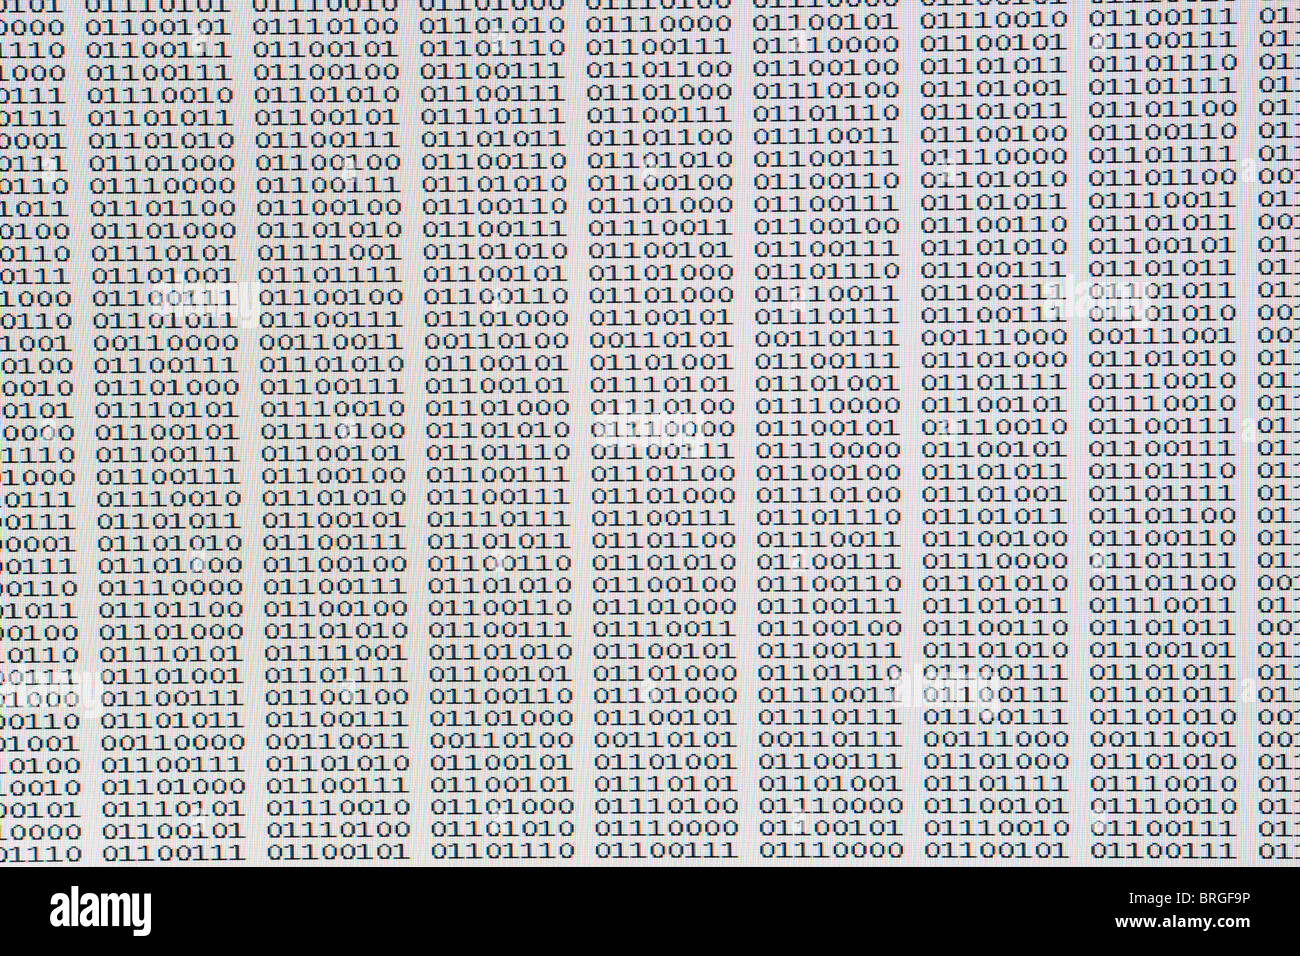 screenshot of binary coding data Stock Photo